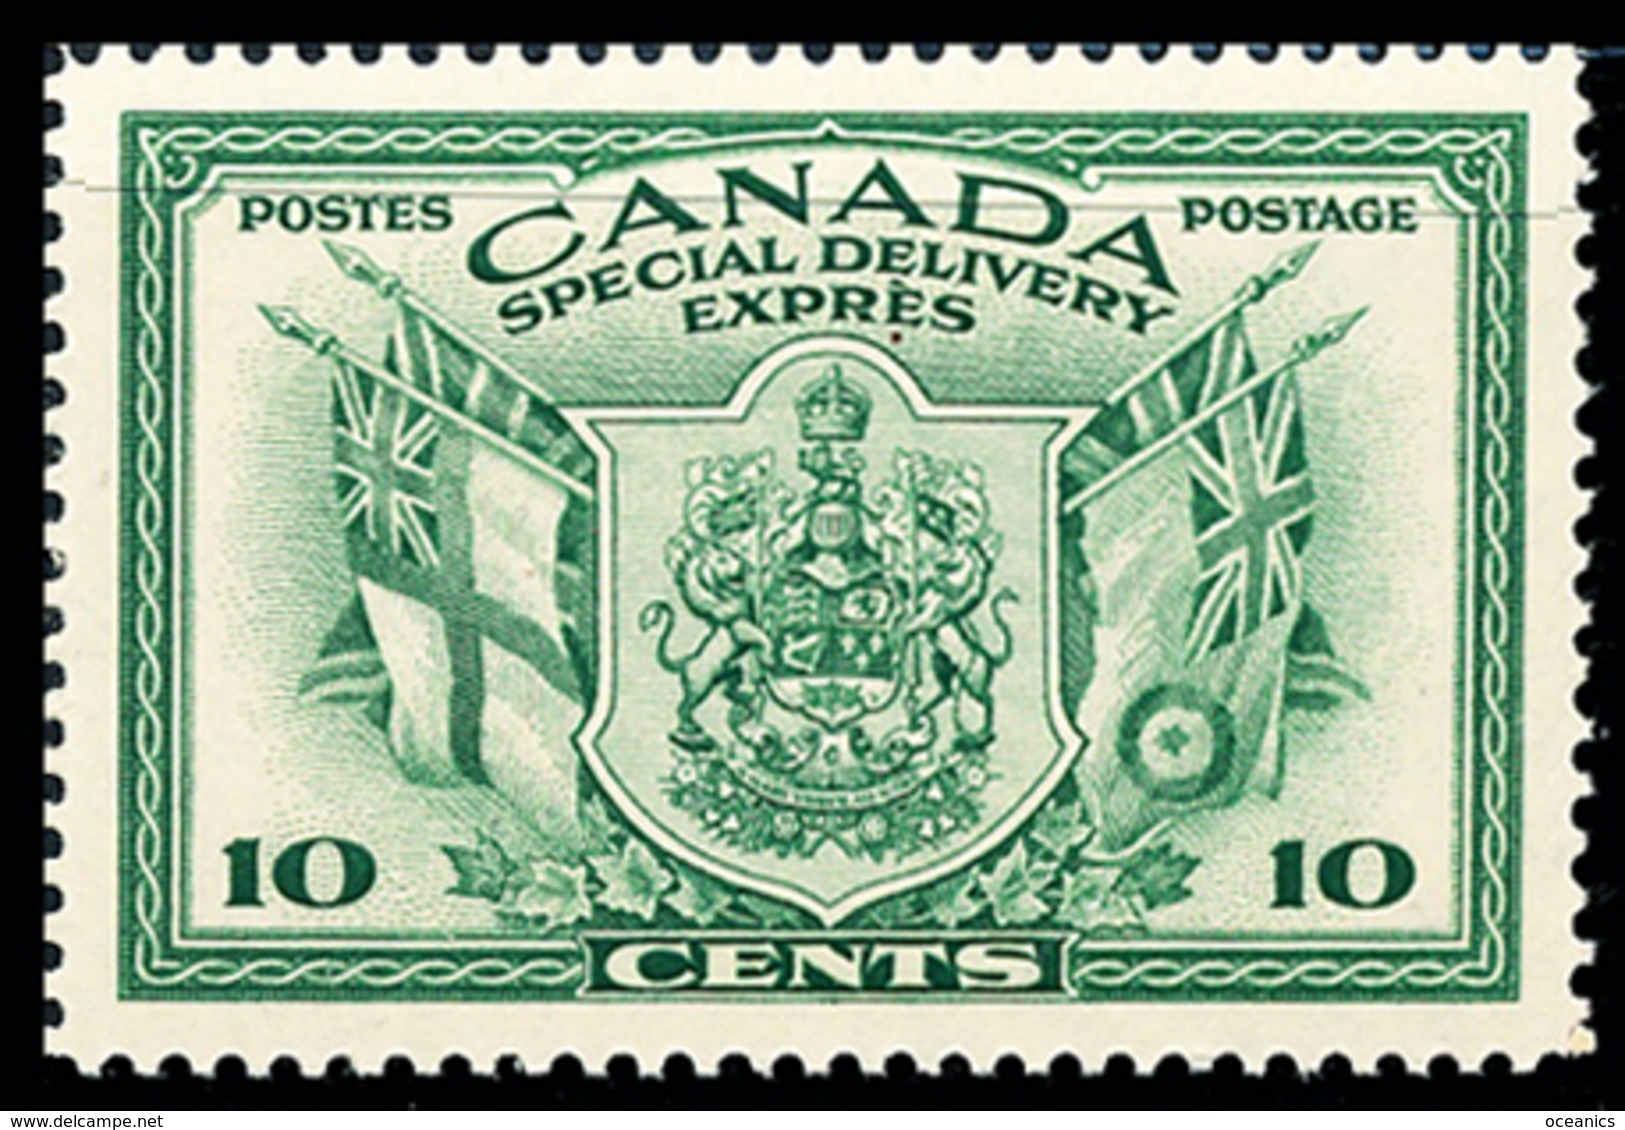 Canada (Scott No.E10 - Livraison Spéciale / Special Delivery) (**) - Exprès